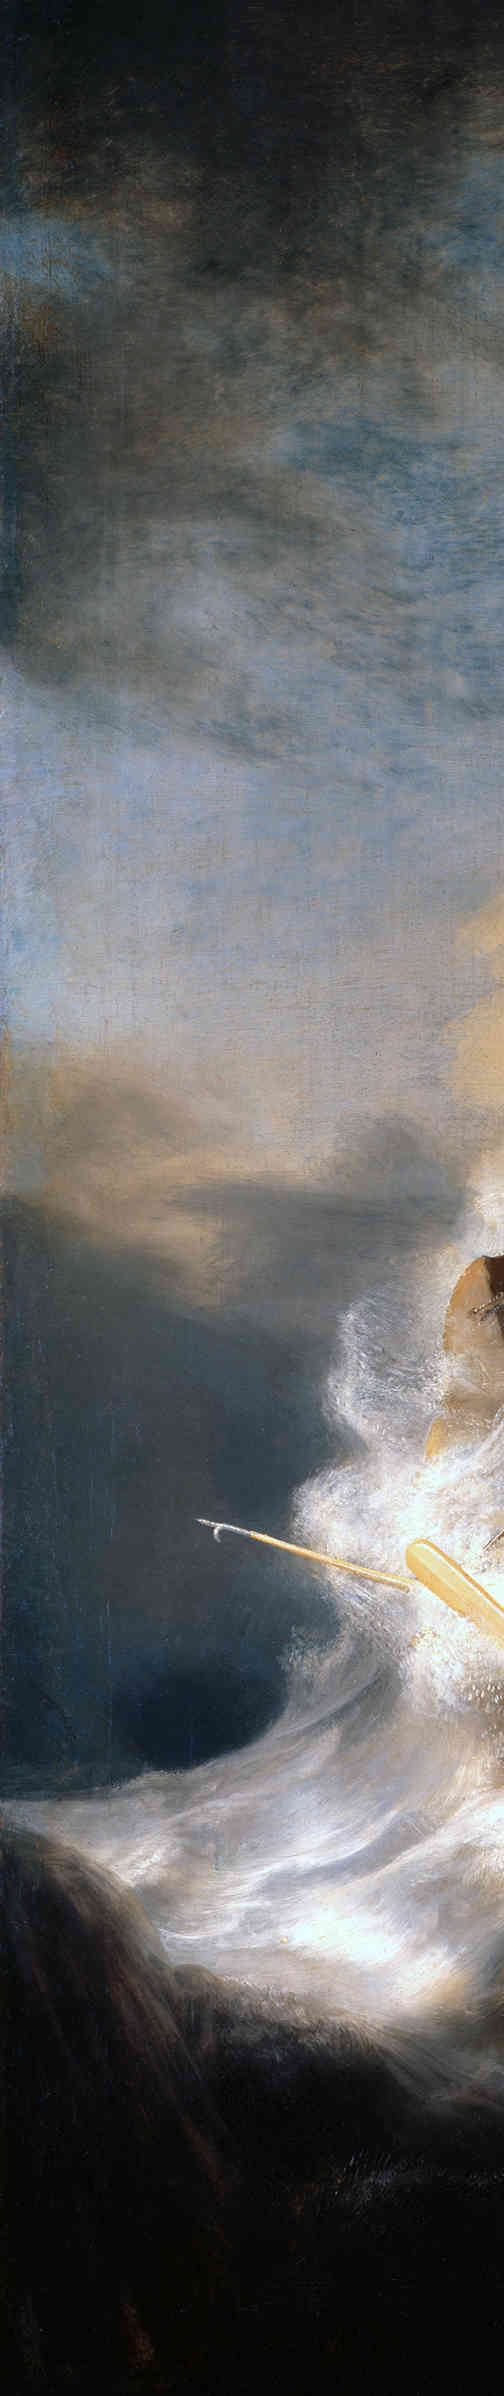 Le Christ dans la tempête sur la mer de Galilée, détail (Rembrandt,
1632)